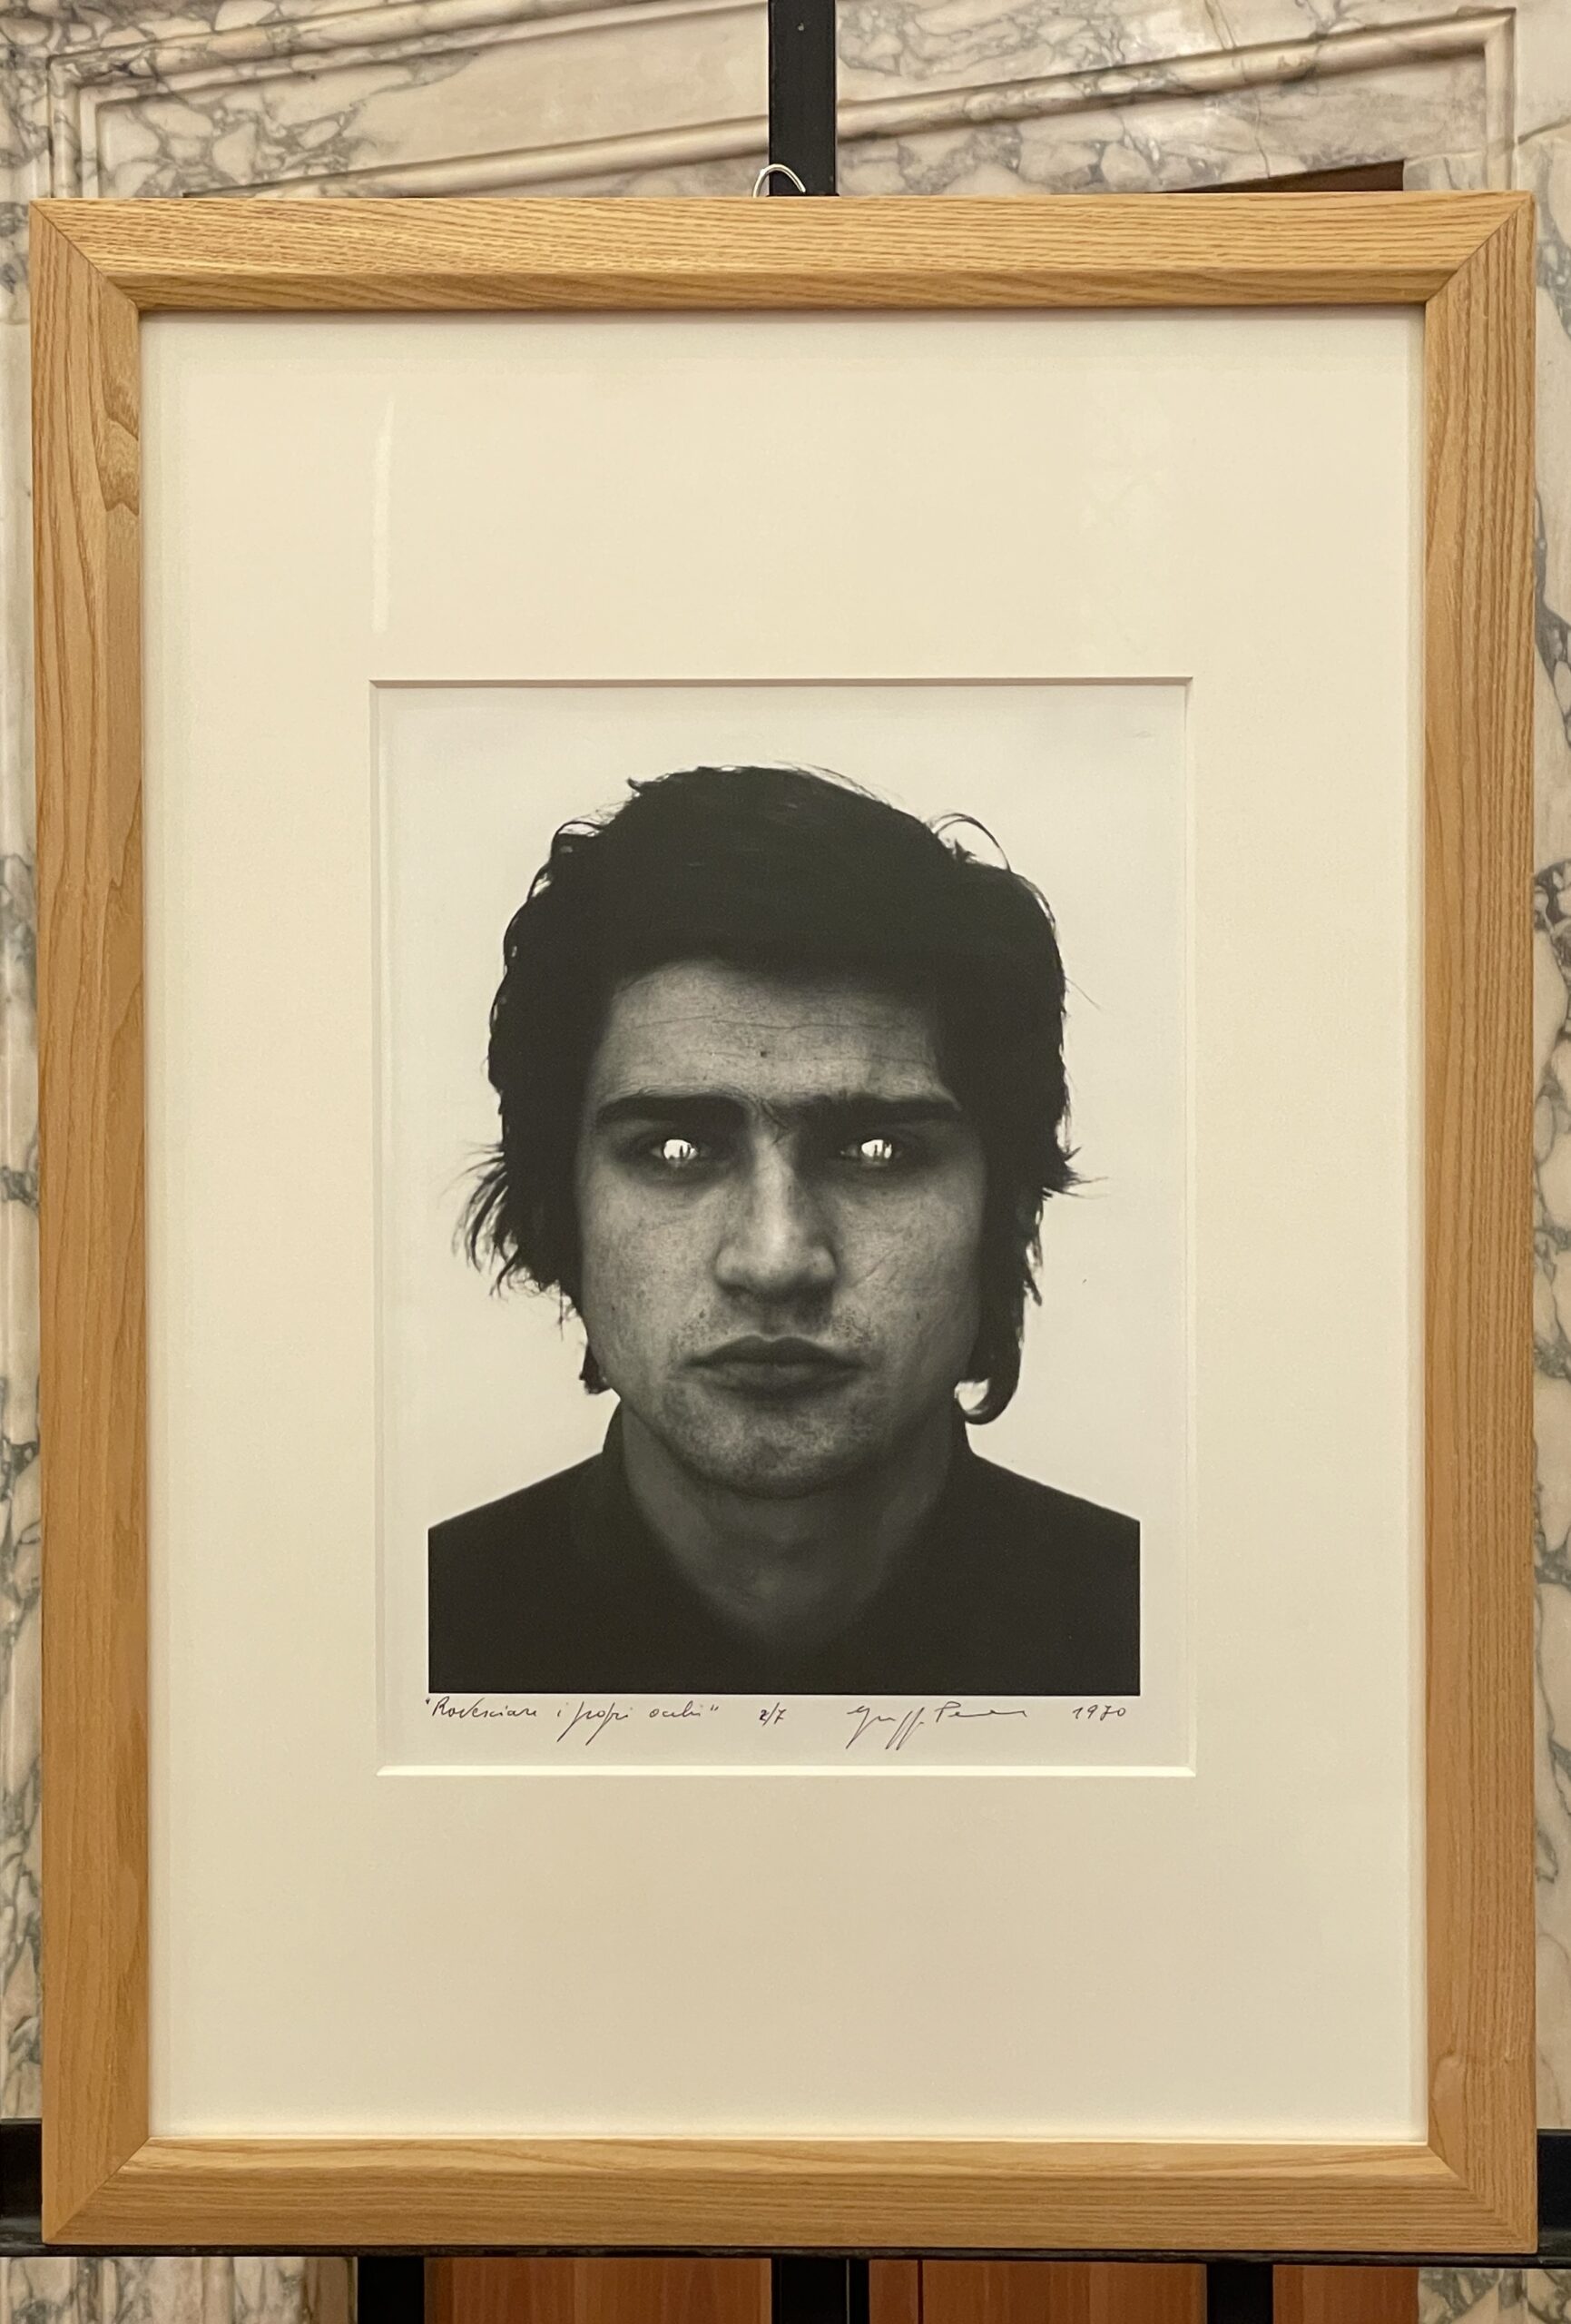 Giuseppe Penone (Garessio (CN), 1947)Rovesciare i propri occhi 1970 39,5 x 29,8 cm Fotografia b/n ai sali d’argento virata al selenio su carta baritata Esemplare 2 di 7